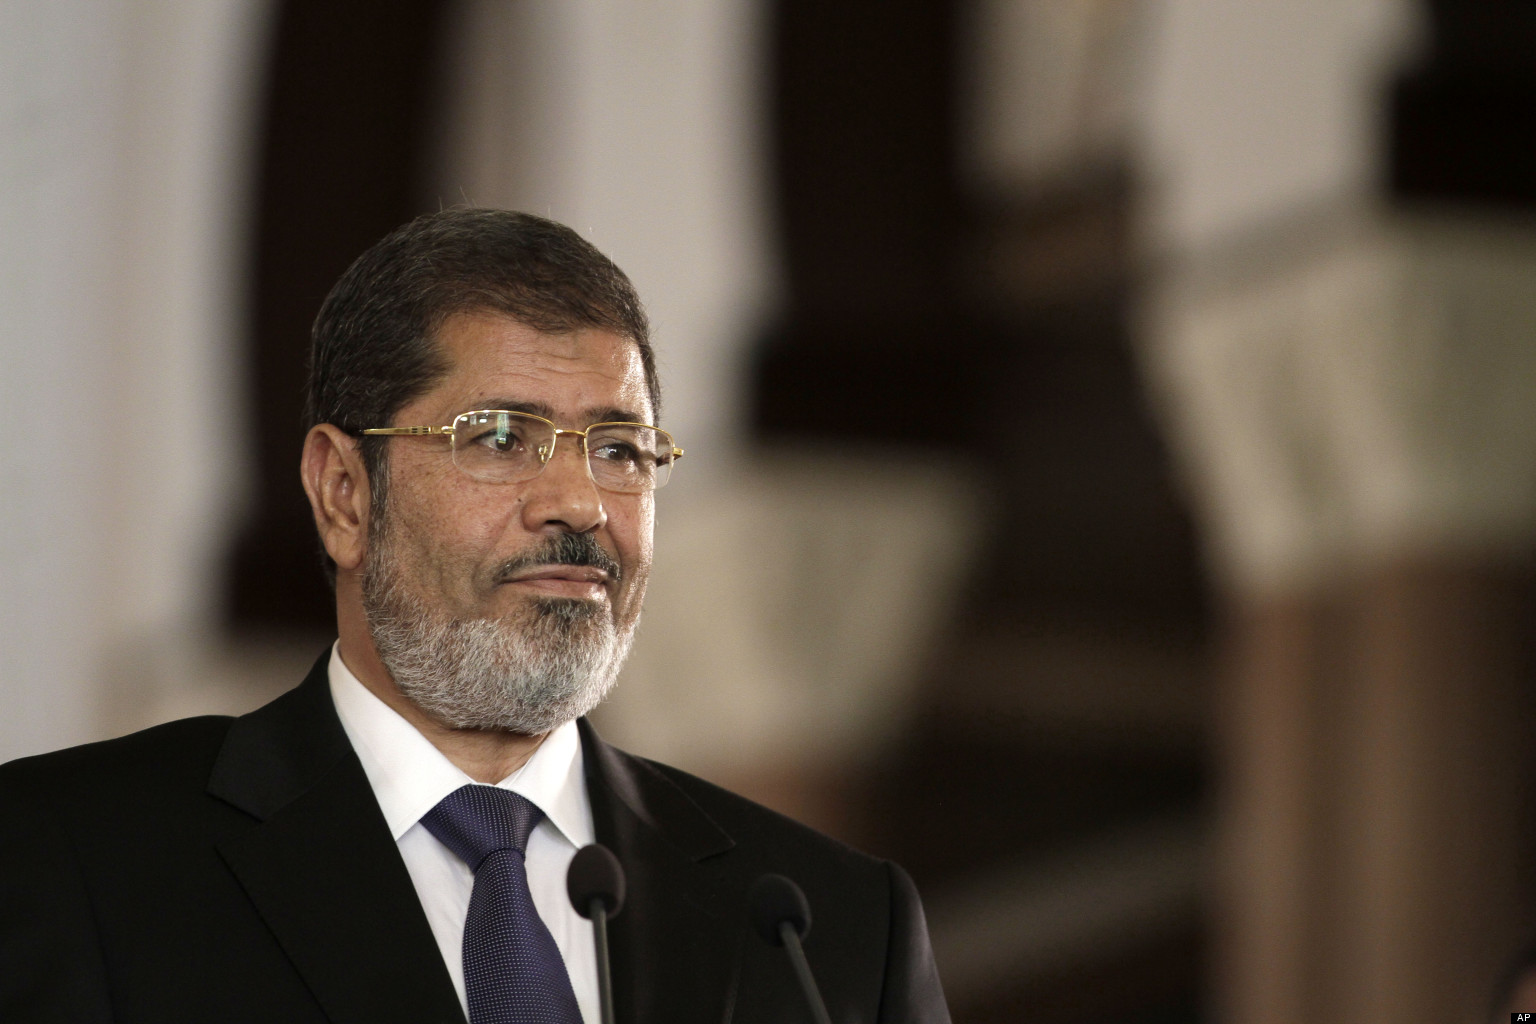 وفاة الرئيس المصري السابق محمد مرسي - جريدة الغد